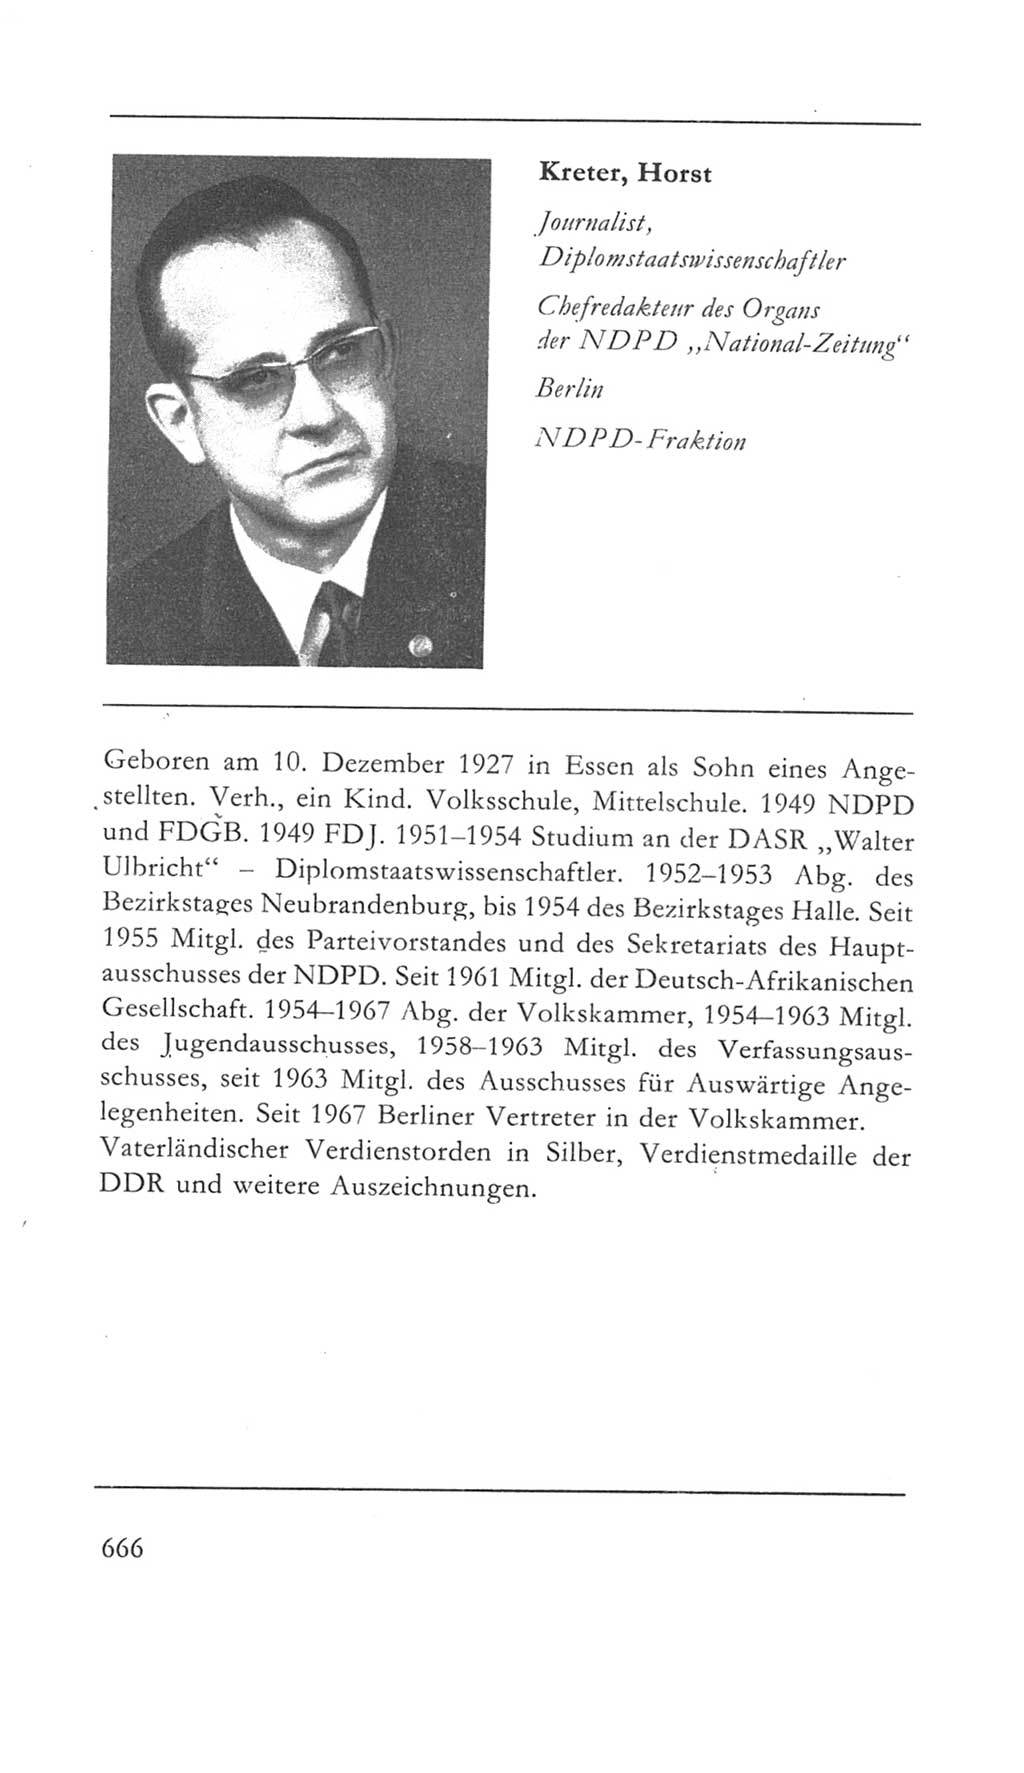 Volkskammer (VK) der Deutschen Demokratischen Republik (DDR) 5. Wahlperiode 1967-1971, Seite 666 (VK. DDR 5. WP. 1967-1971, S. 666)